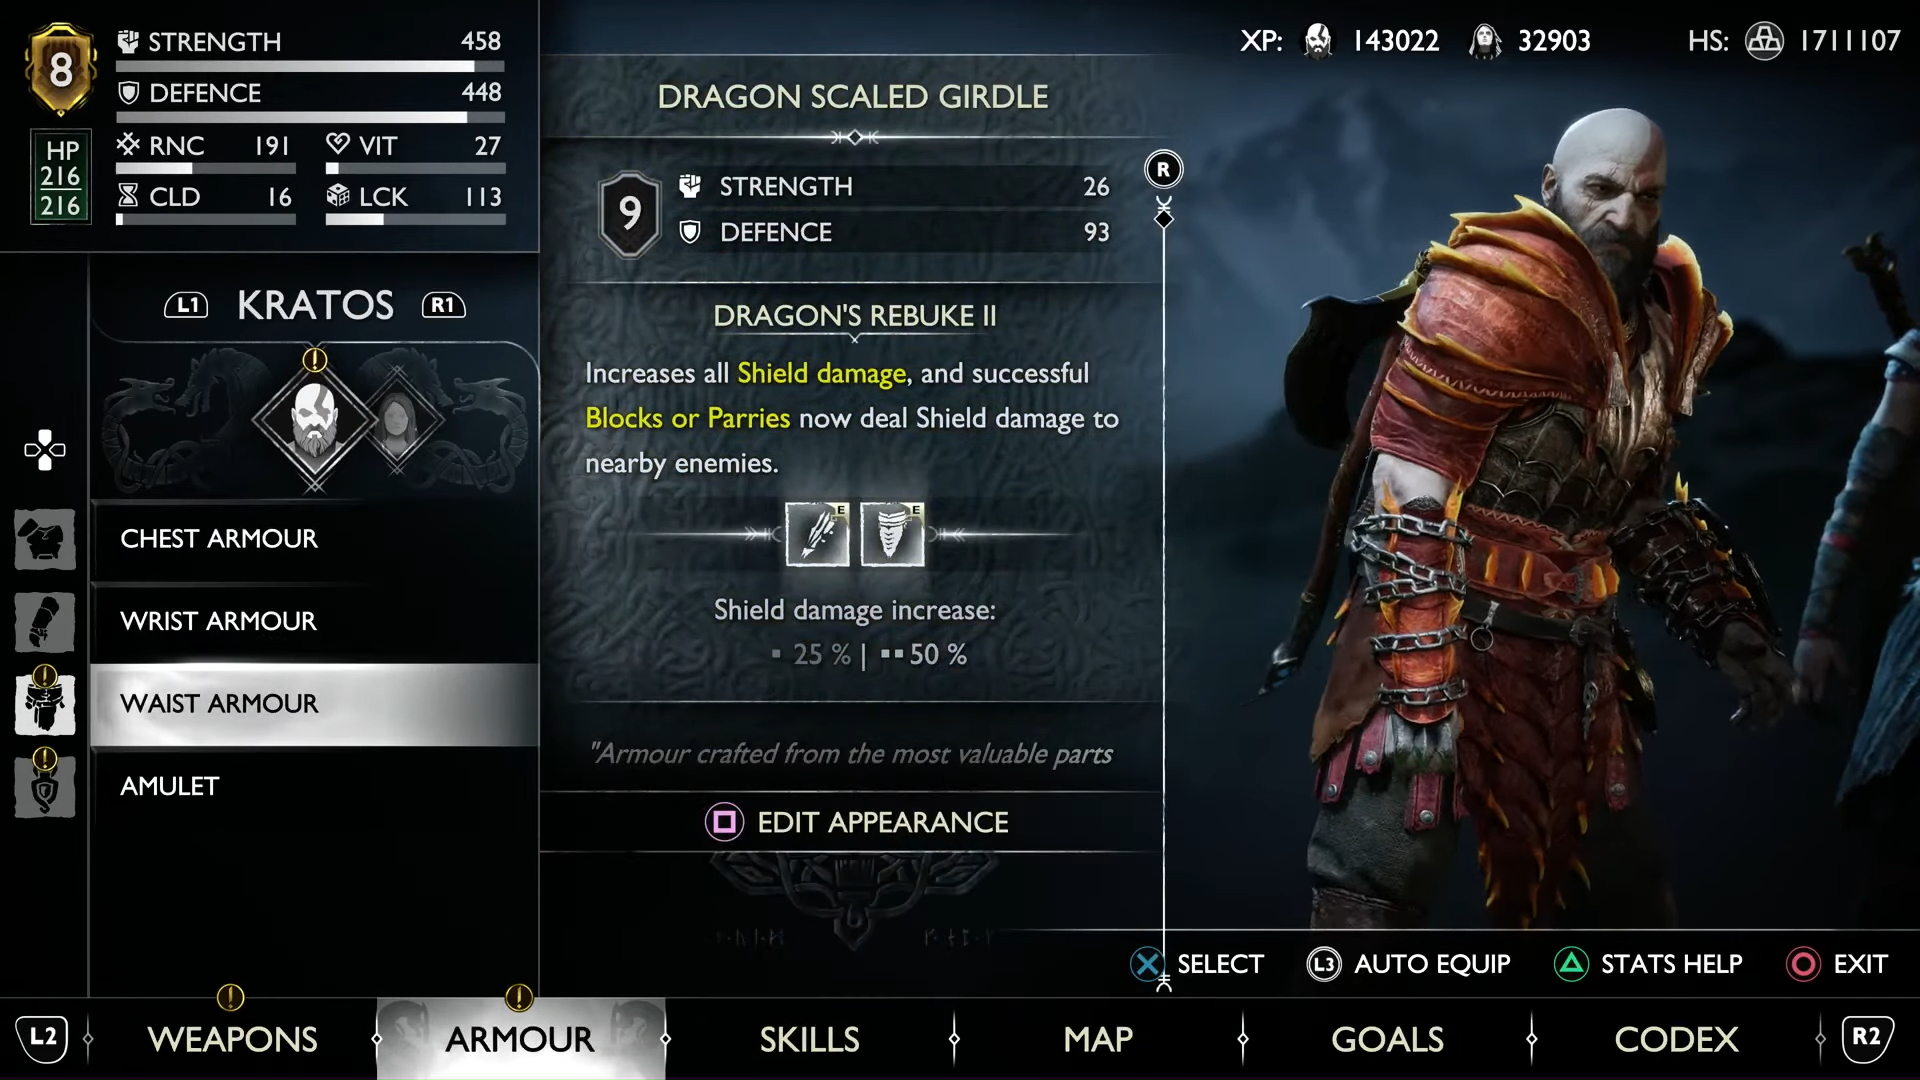 Kratos wearing Dragon armor.